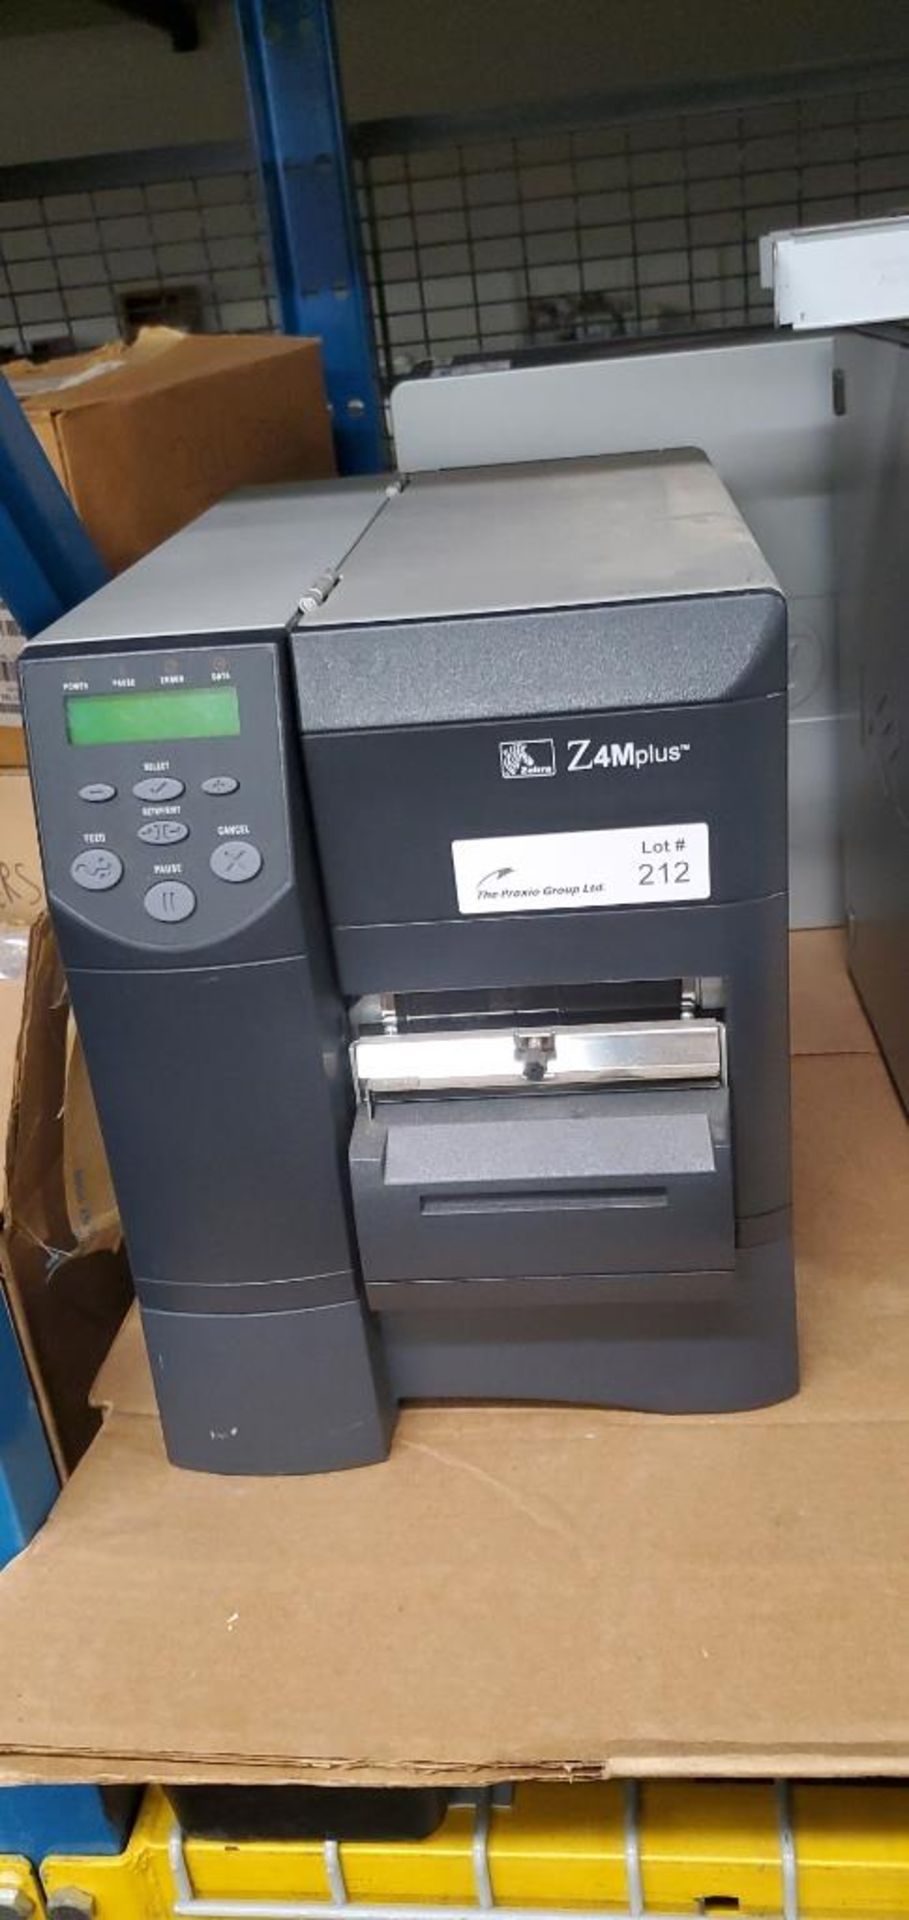 Zebra Model Z4M Plus Thermal Label Printer - Image 3 of 3